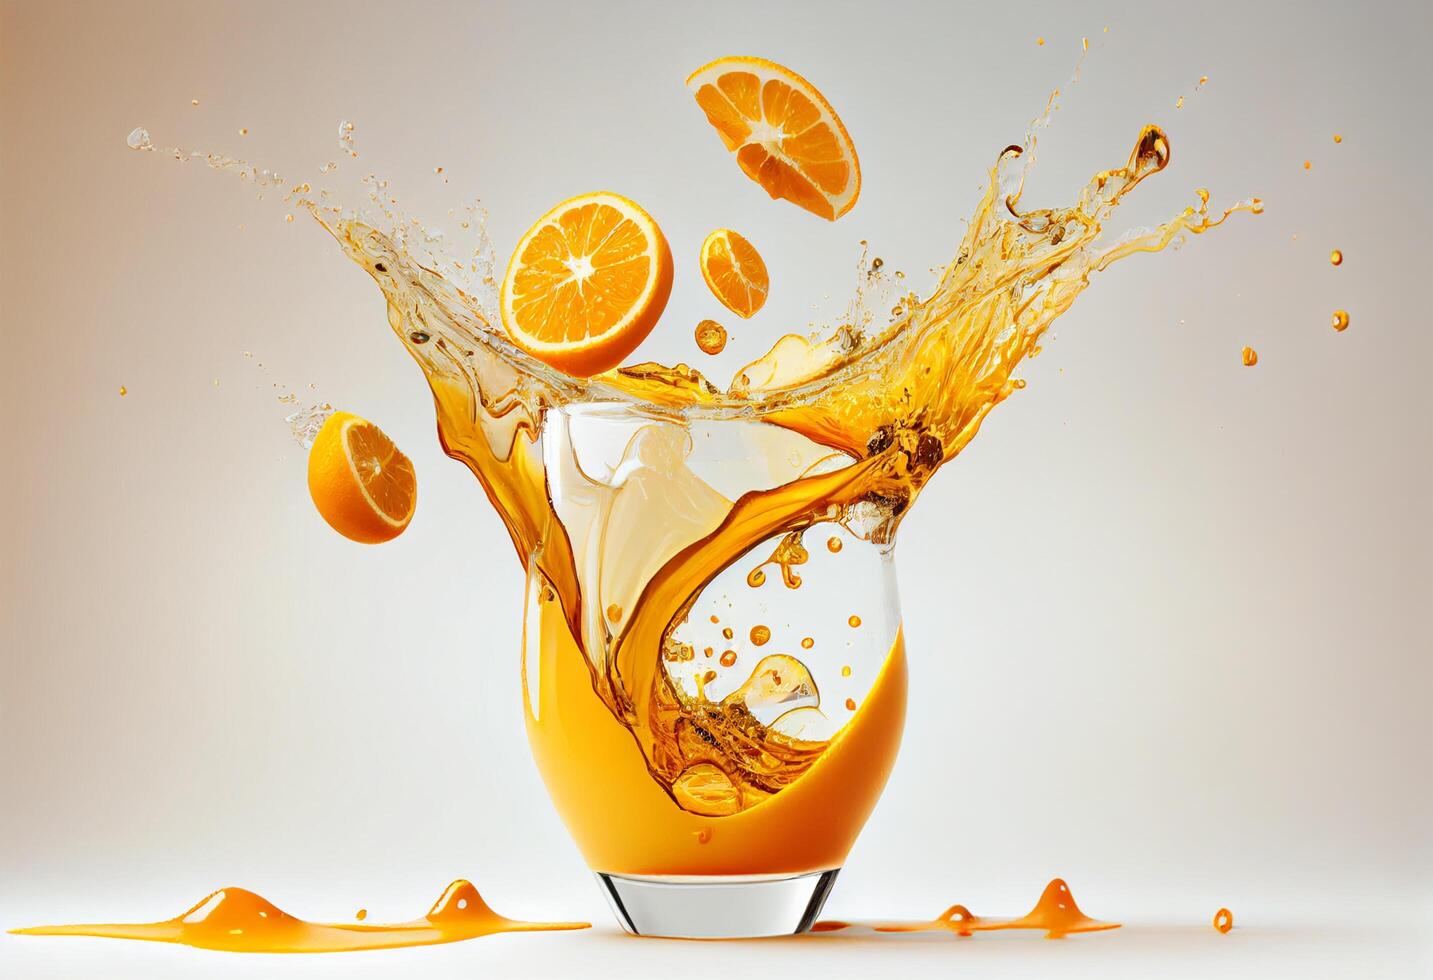 Mango juice splash on white background photo